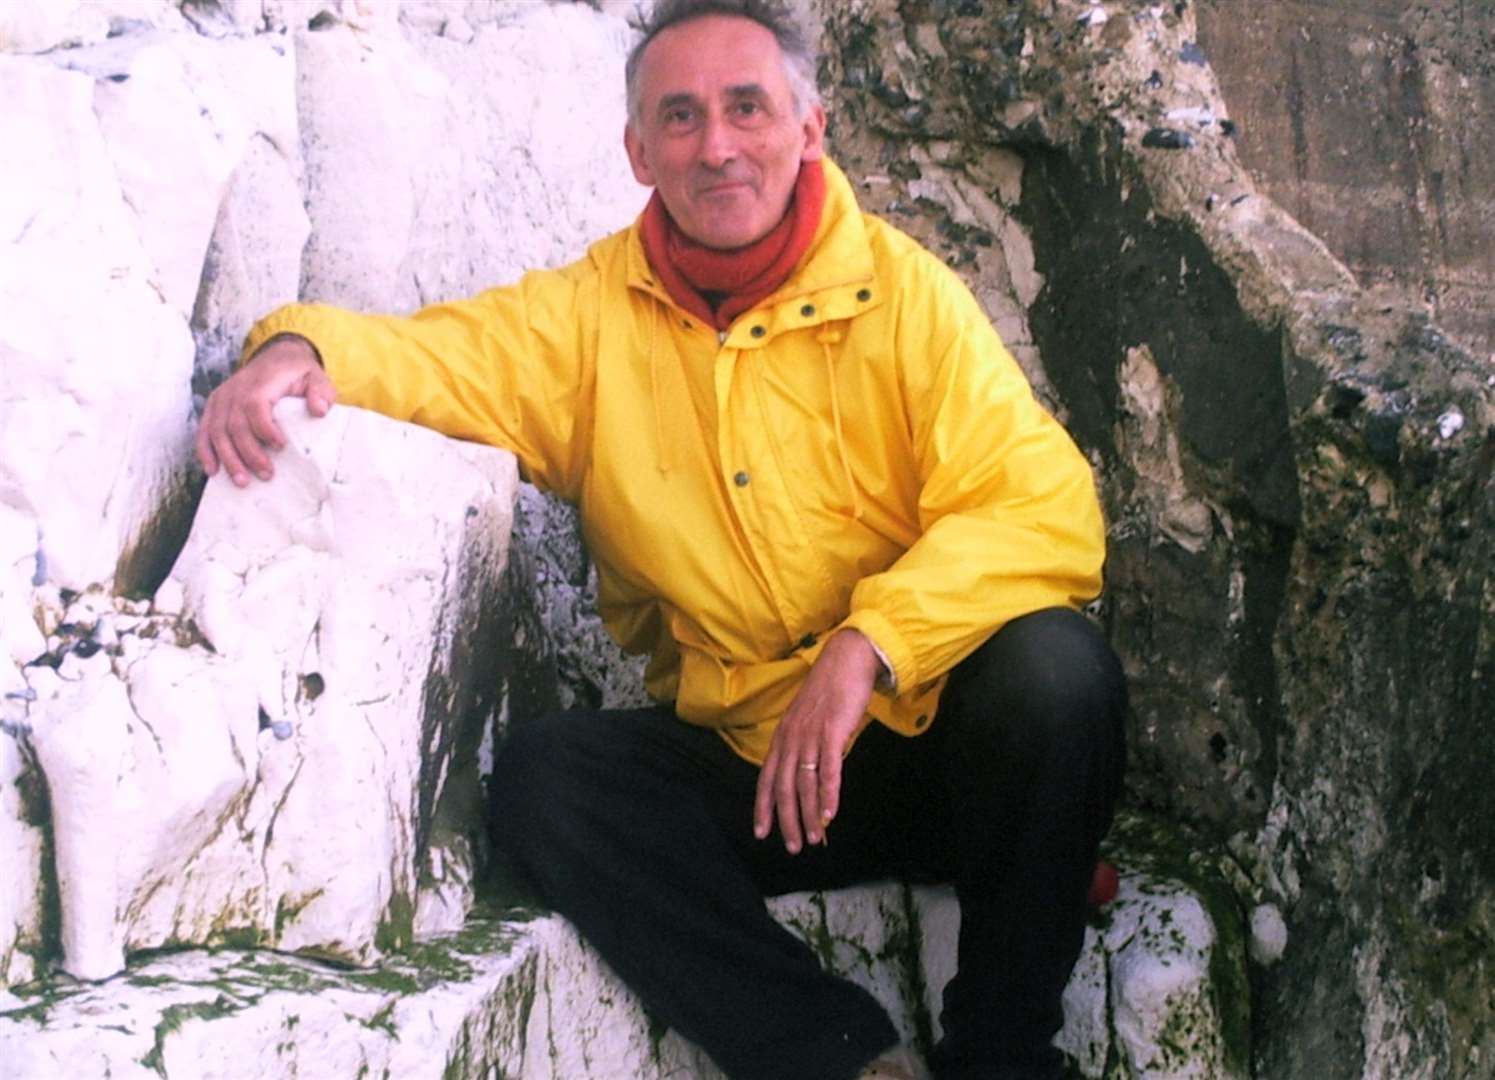 Steve Dymond, from Broadstairs, died in 2018